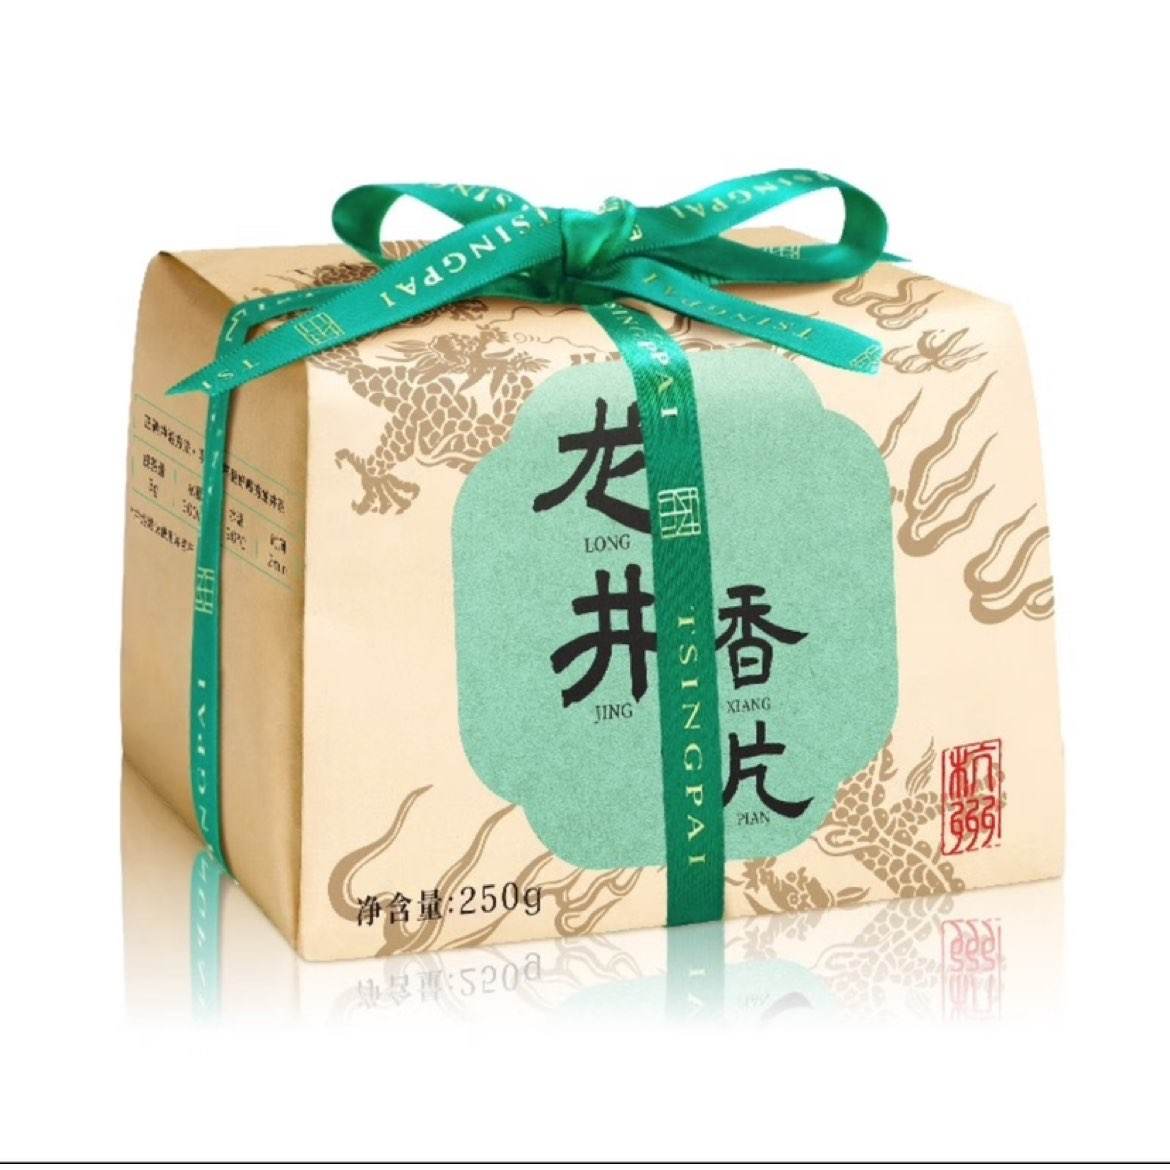 卢正浩 明前龙井 绿茶纸包250g 30.22元